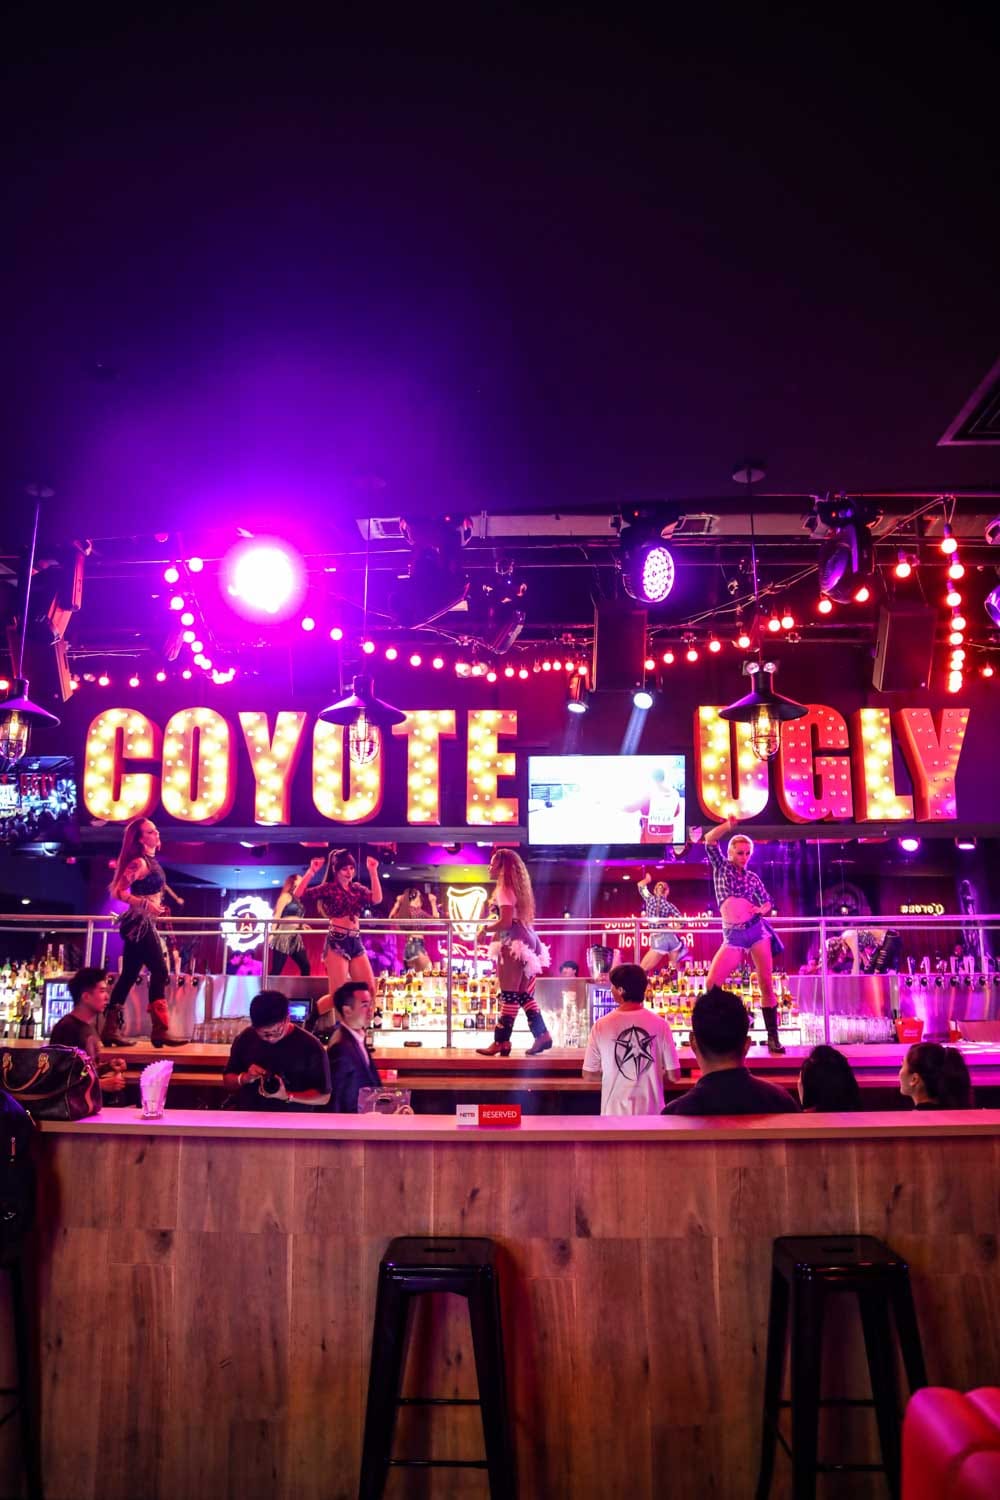 coyote-0658